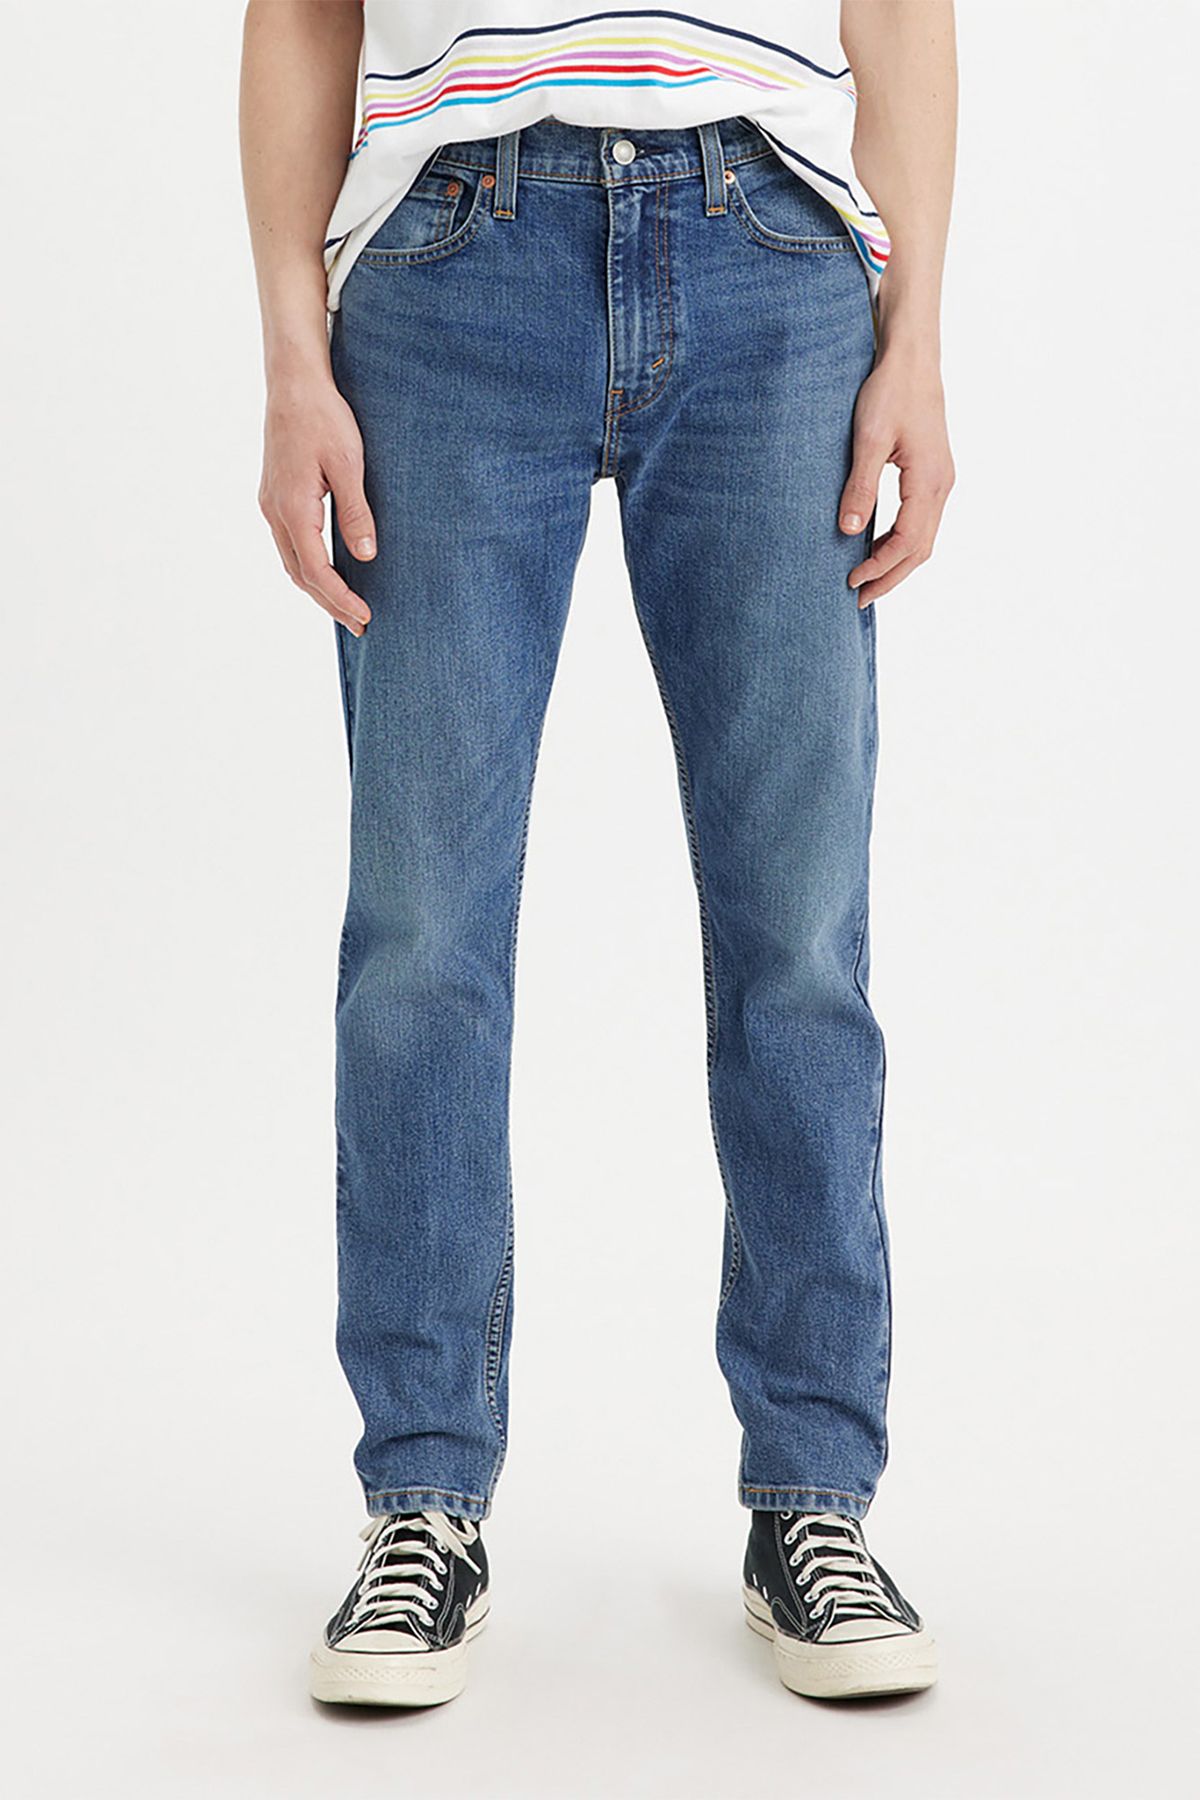 Levi's Levi's Men's 512 Slim Taper Jeans Medium Indigo Men